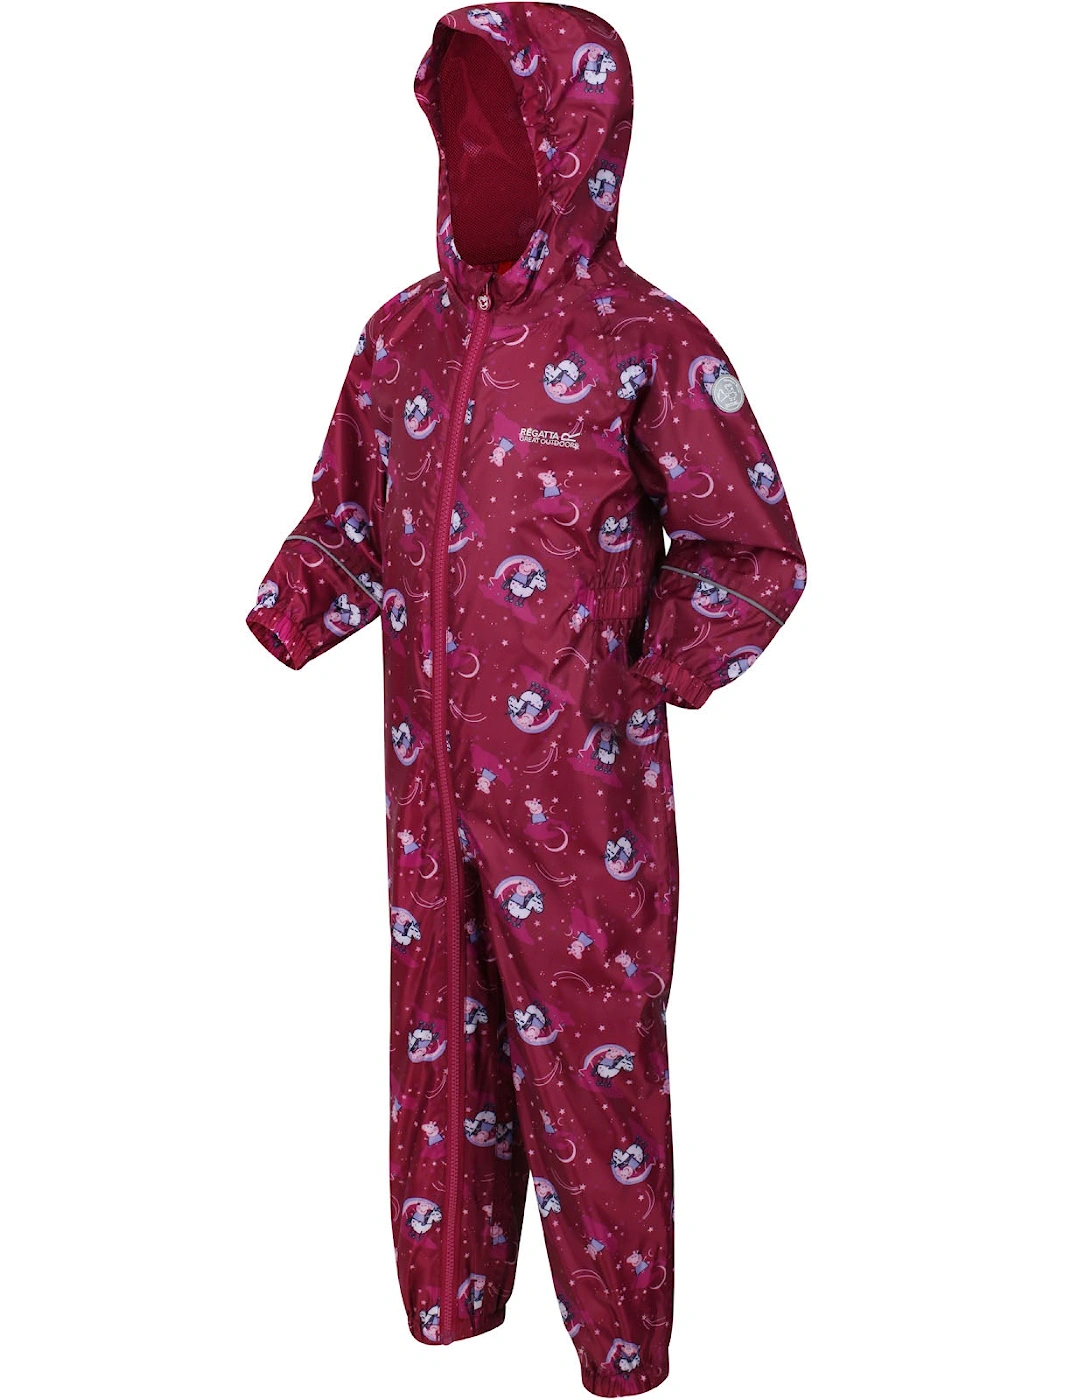 Kids Peppa Pig Pobble Print Waterproof Puddle Suit, 20 of 19